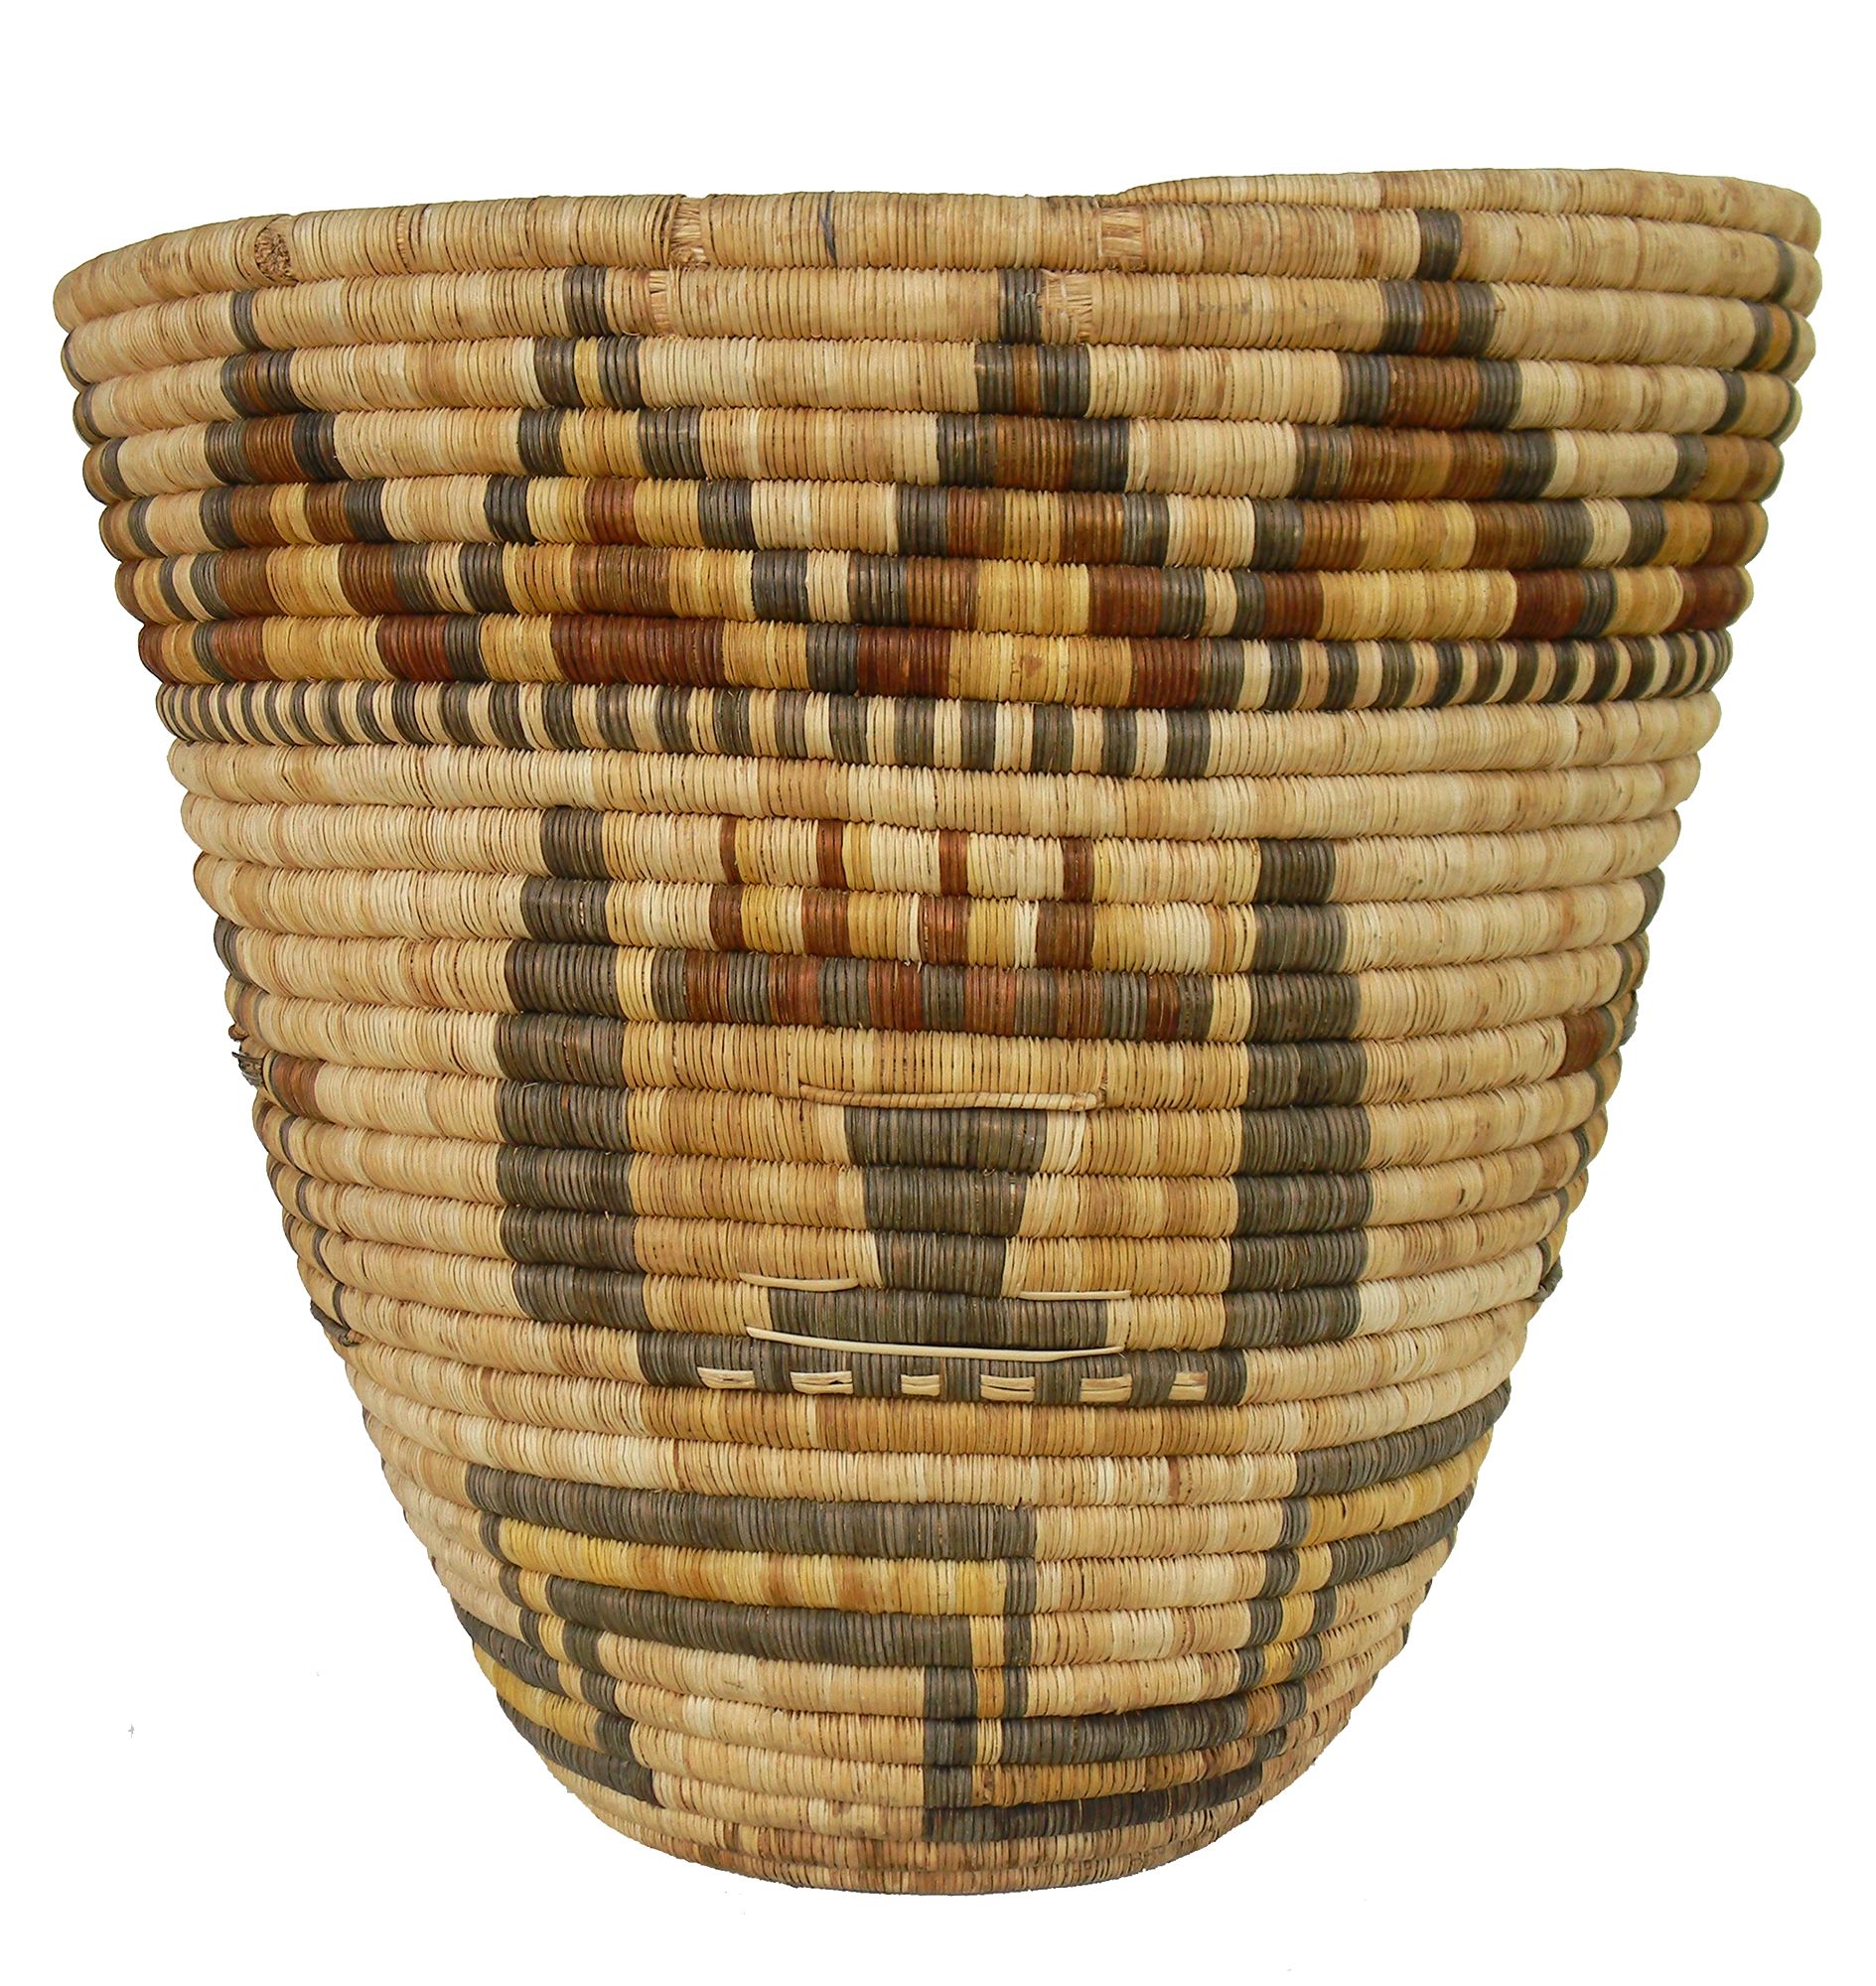 Basket trader